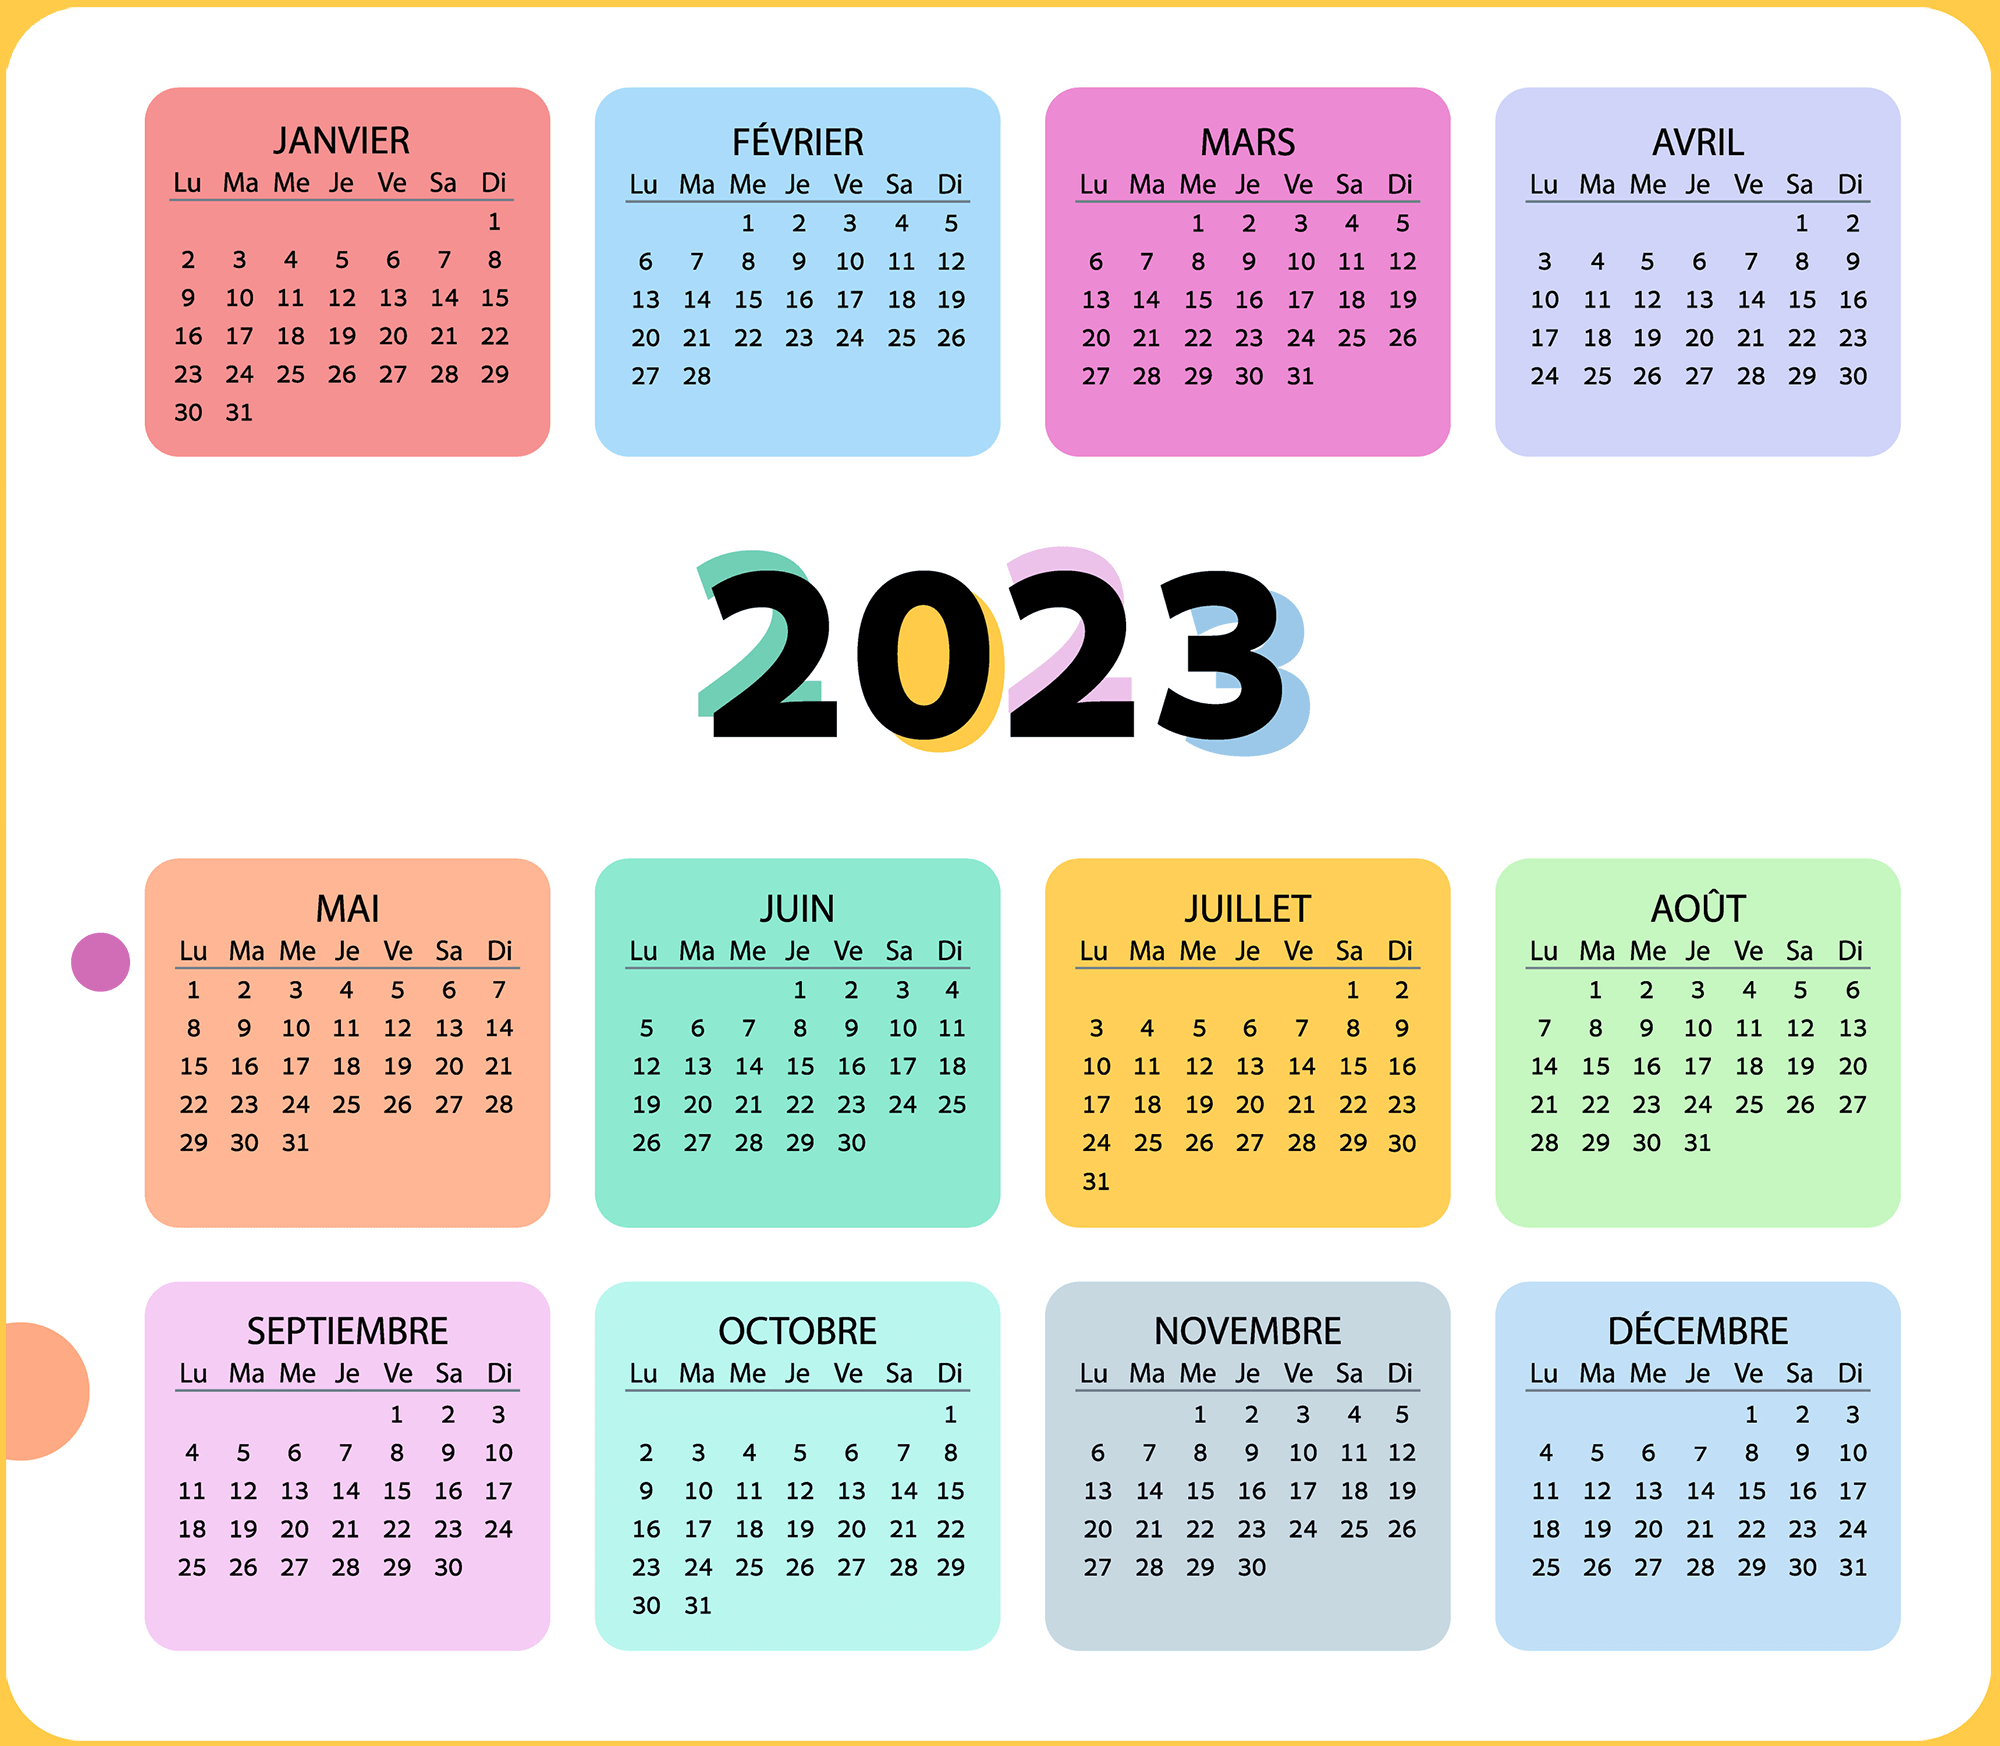 Calendrier 2023 des jours fériés - Jours fériés